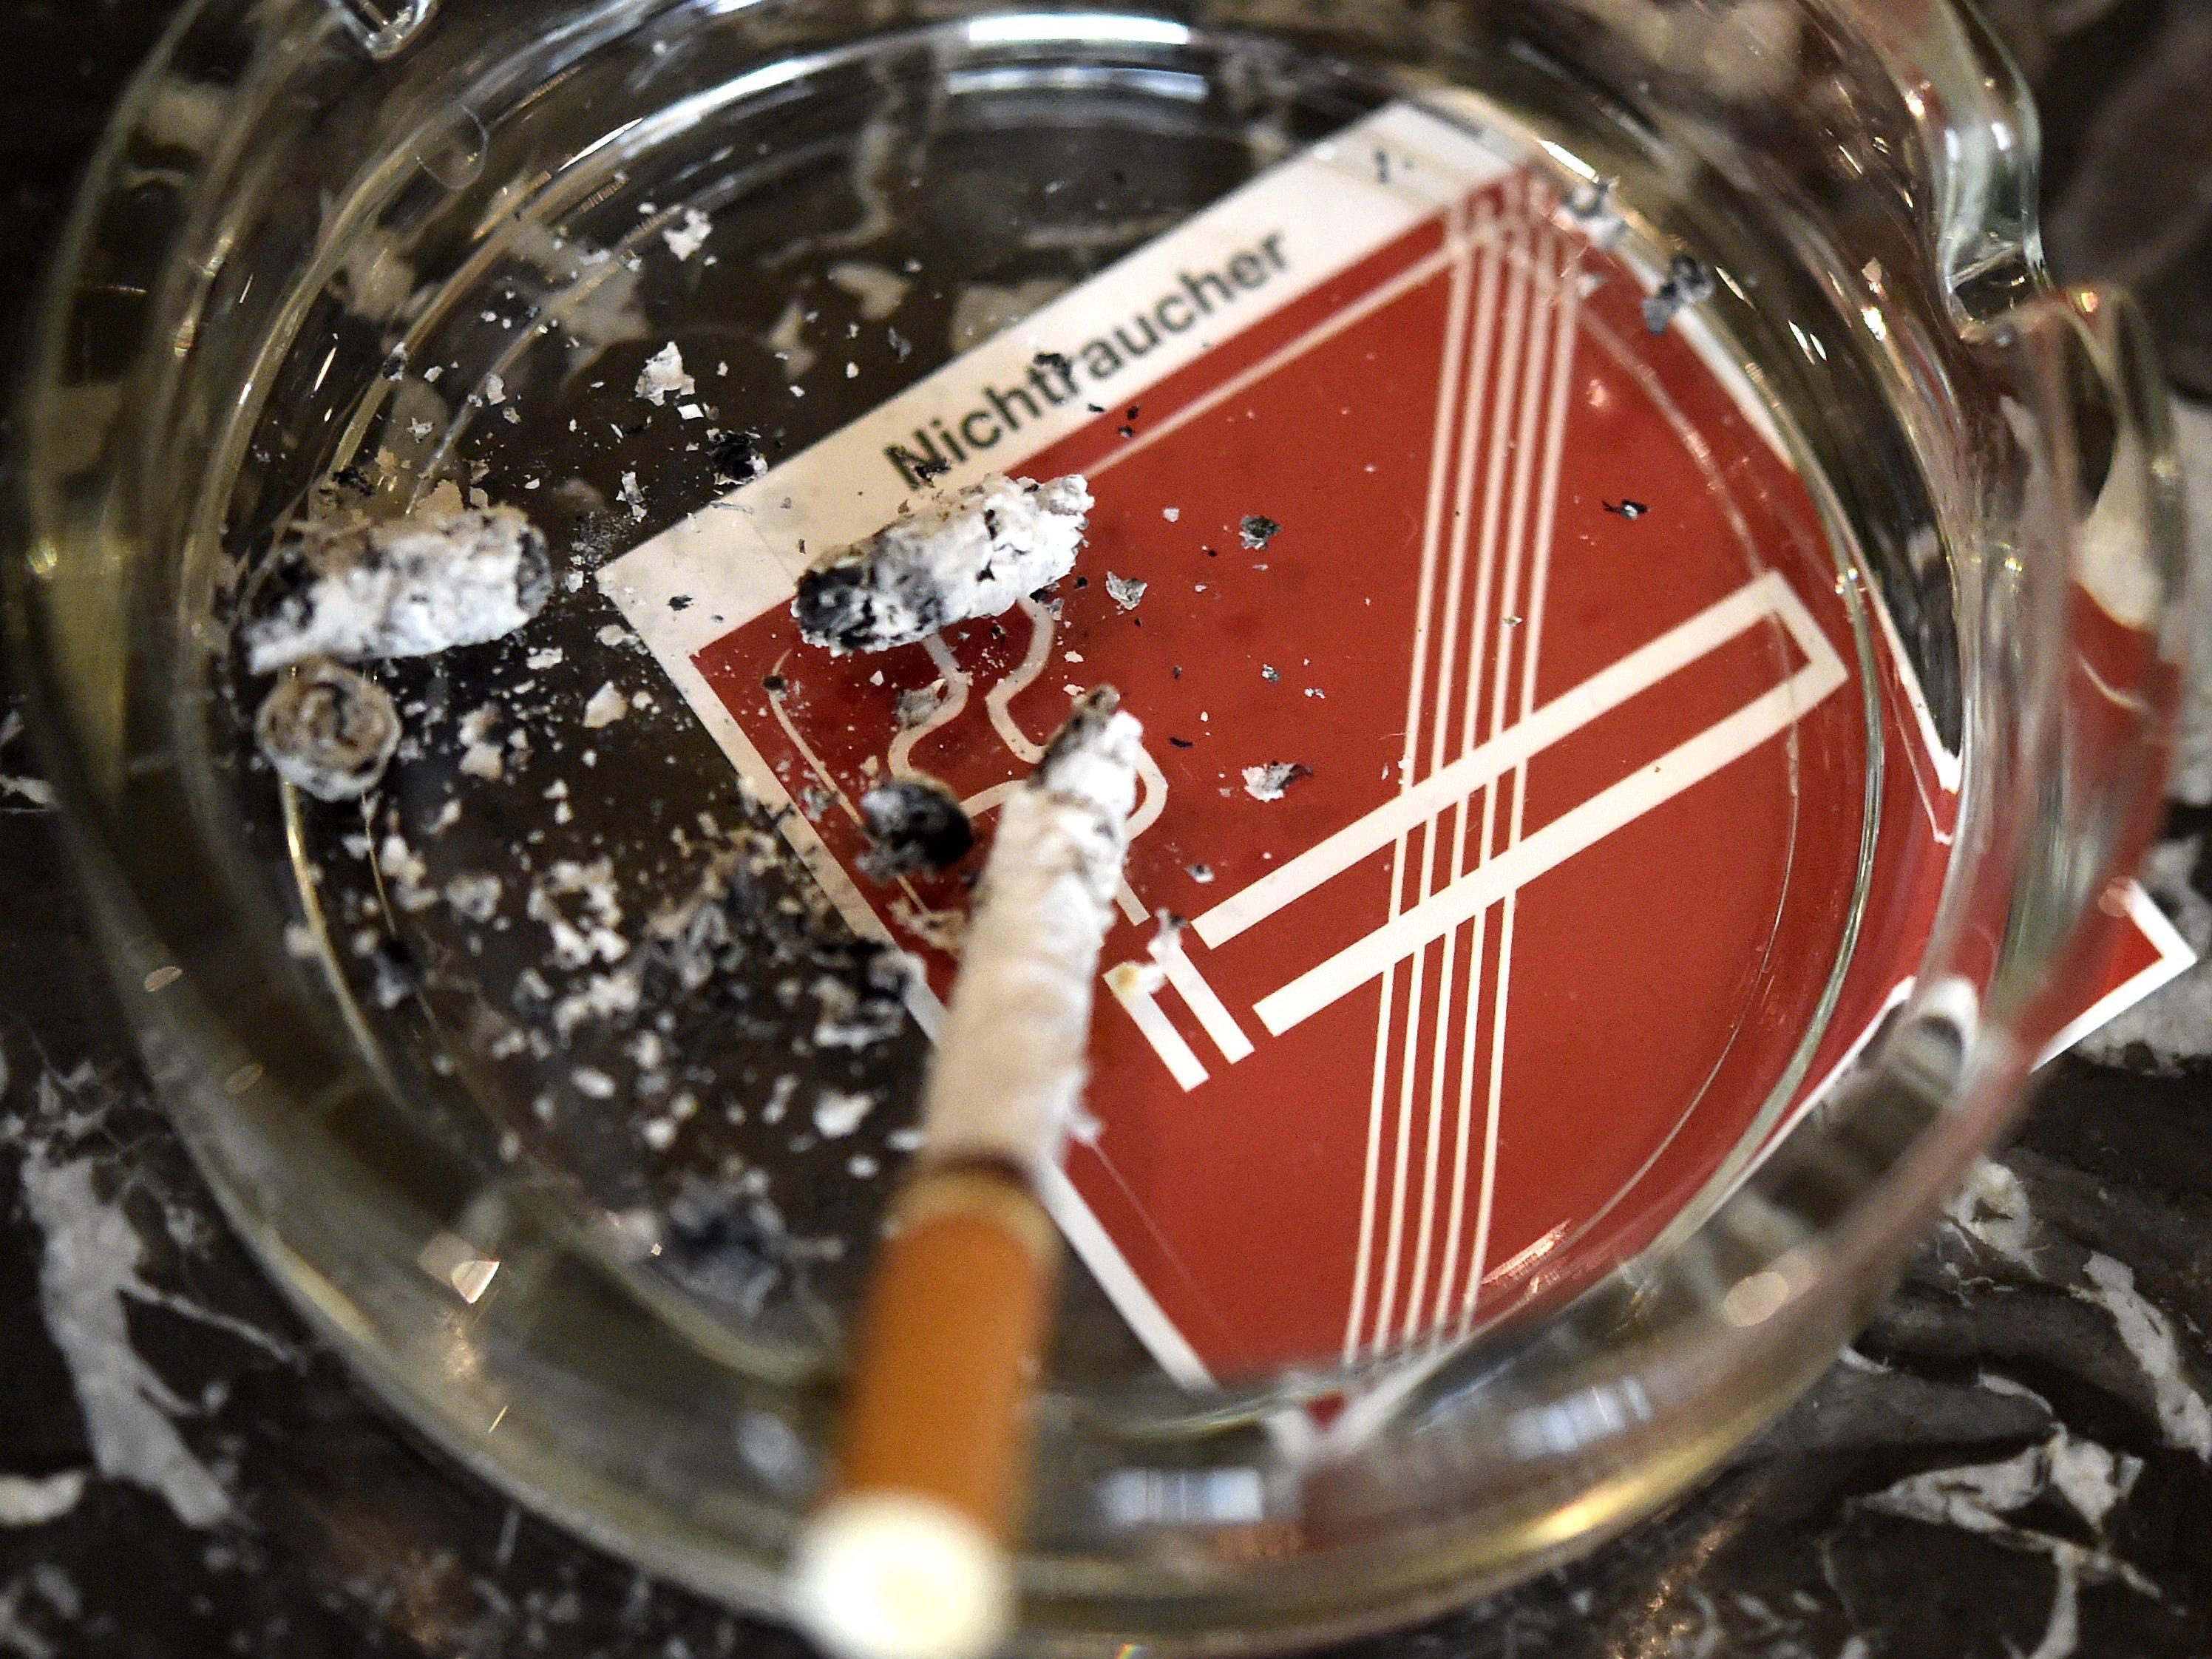 Das Rauchverbot in Gastronomiebetrieben nimmt immer mehr zu.